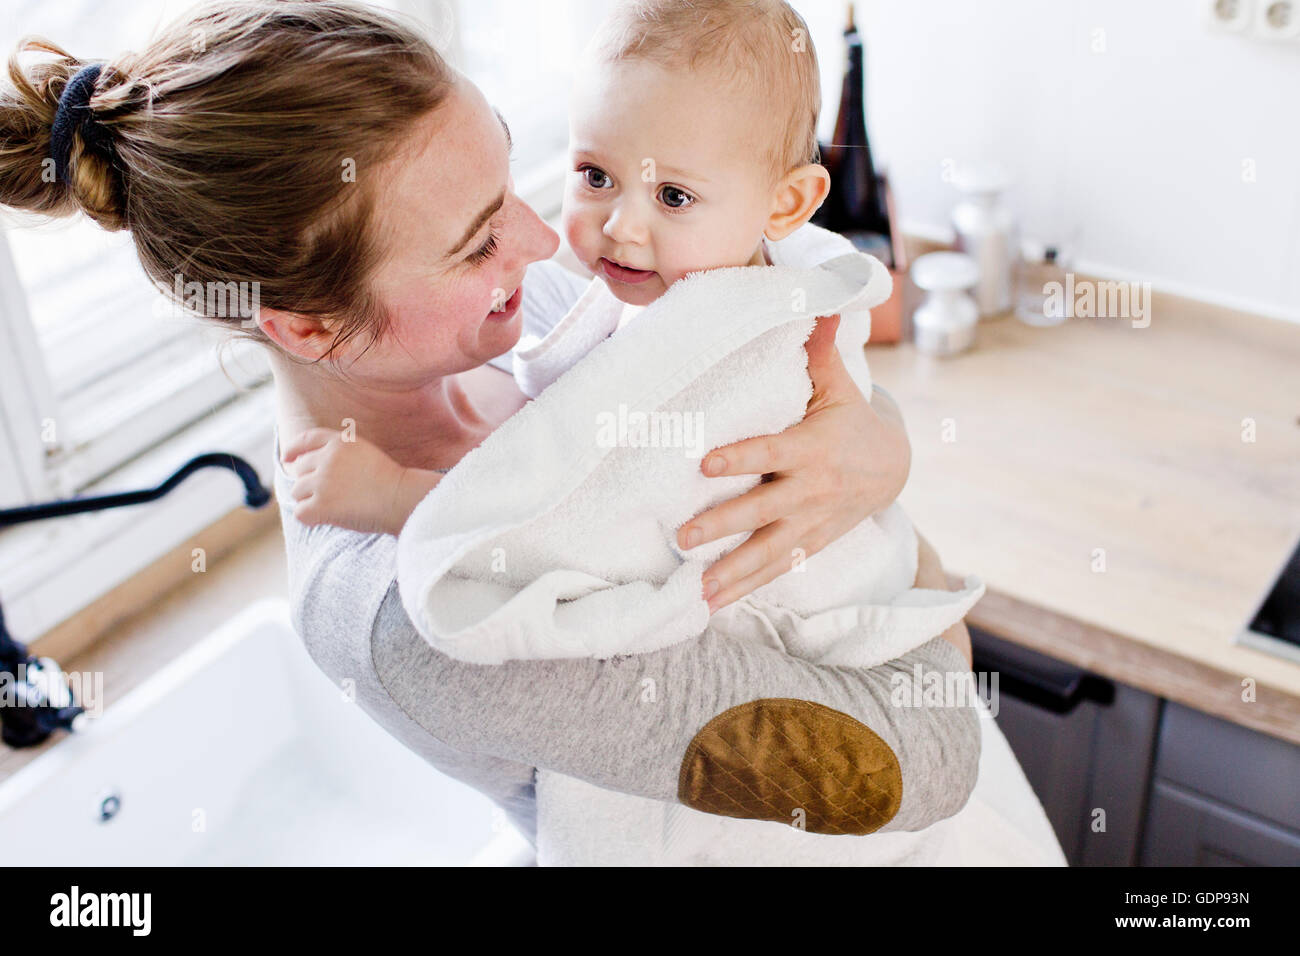 Madre con su hijo envuelto en toalla Foto de stock